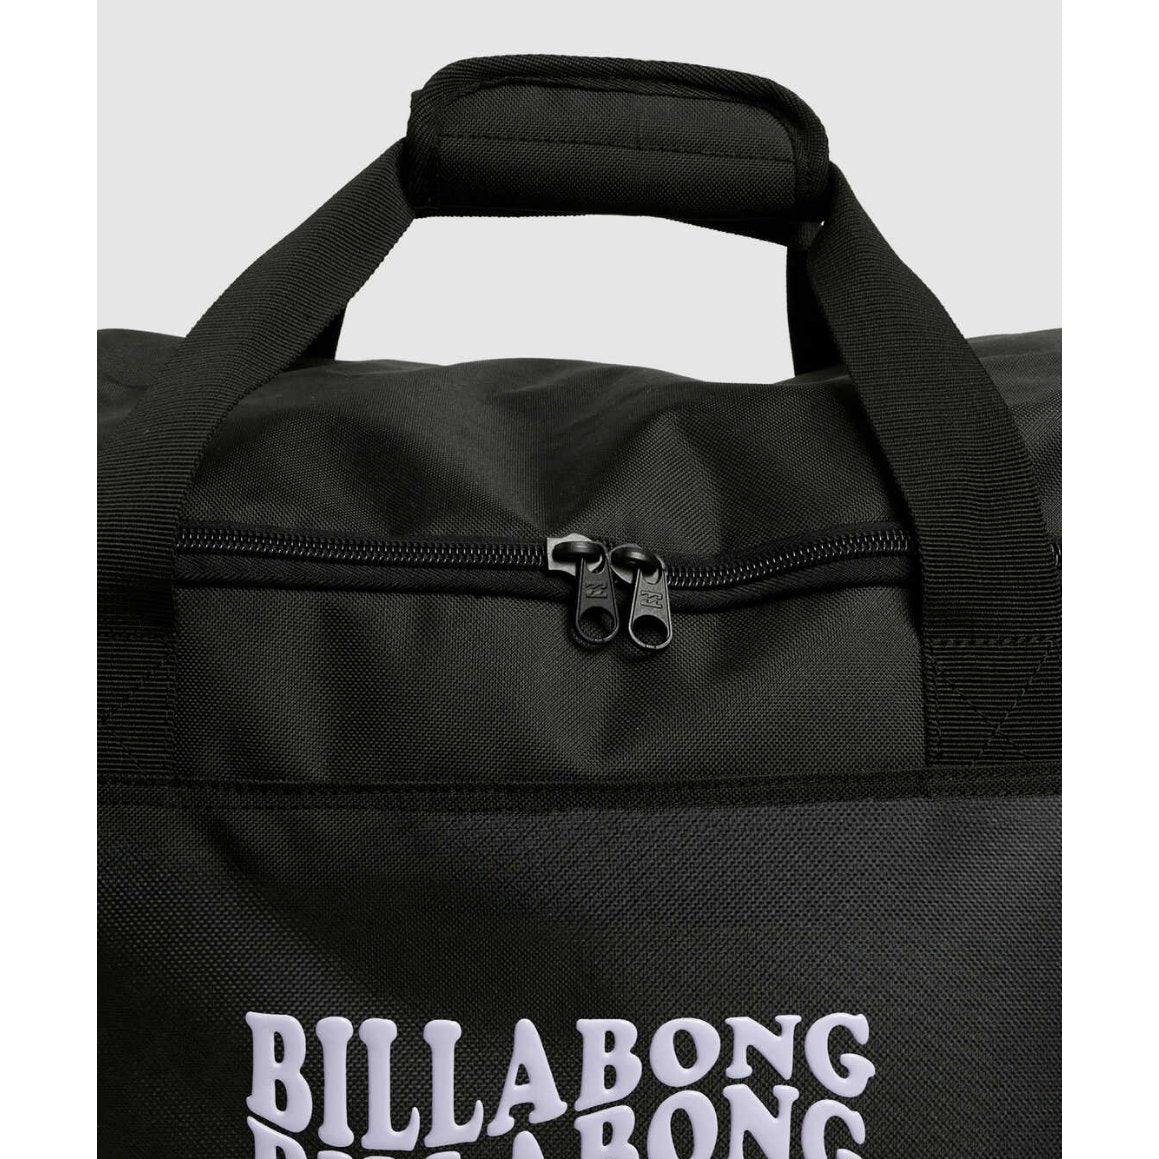 Billabong - Stacked Weekender Bag - Velocity 21